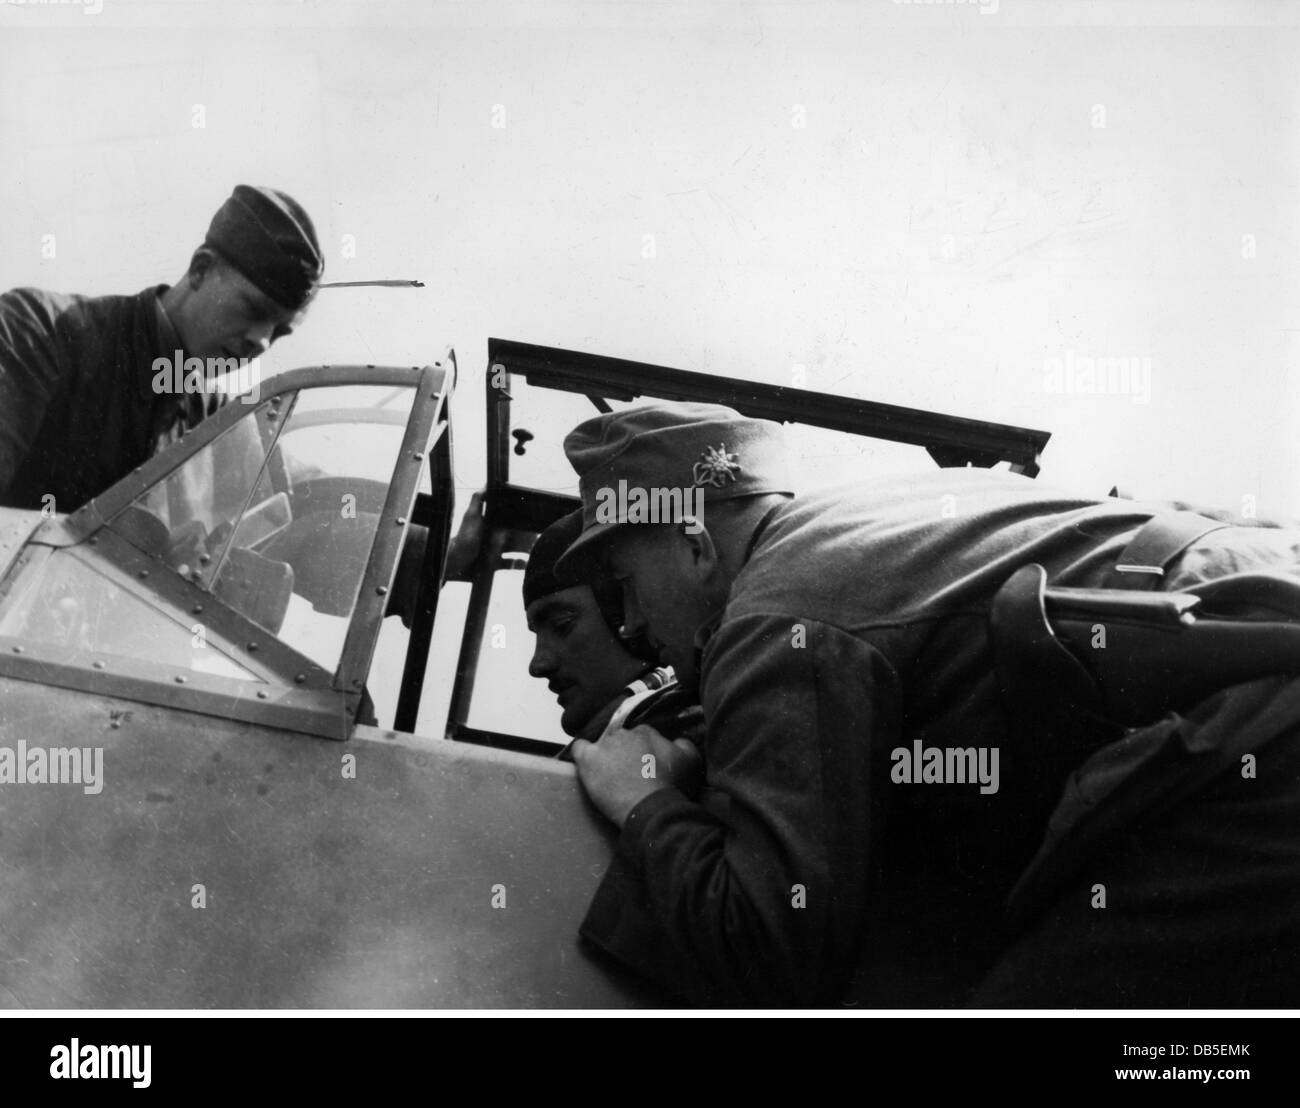 Événements, Seconde Guerre mondiale / Seconde Guerre mondiale, guerre aérienne, personnes, pilote de chasse allemand se préparant pour le décollage dans un Messerschmitt BF 109 E, curieusement regardé par un fantassin de montagne, vers 1940, droits additionnels-Clearences-non disponible Banque D'Images